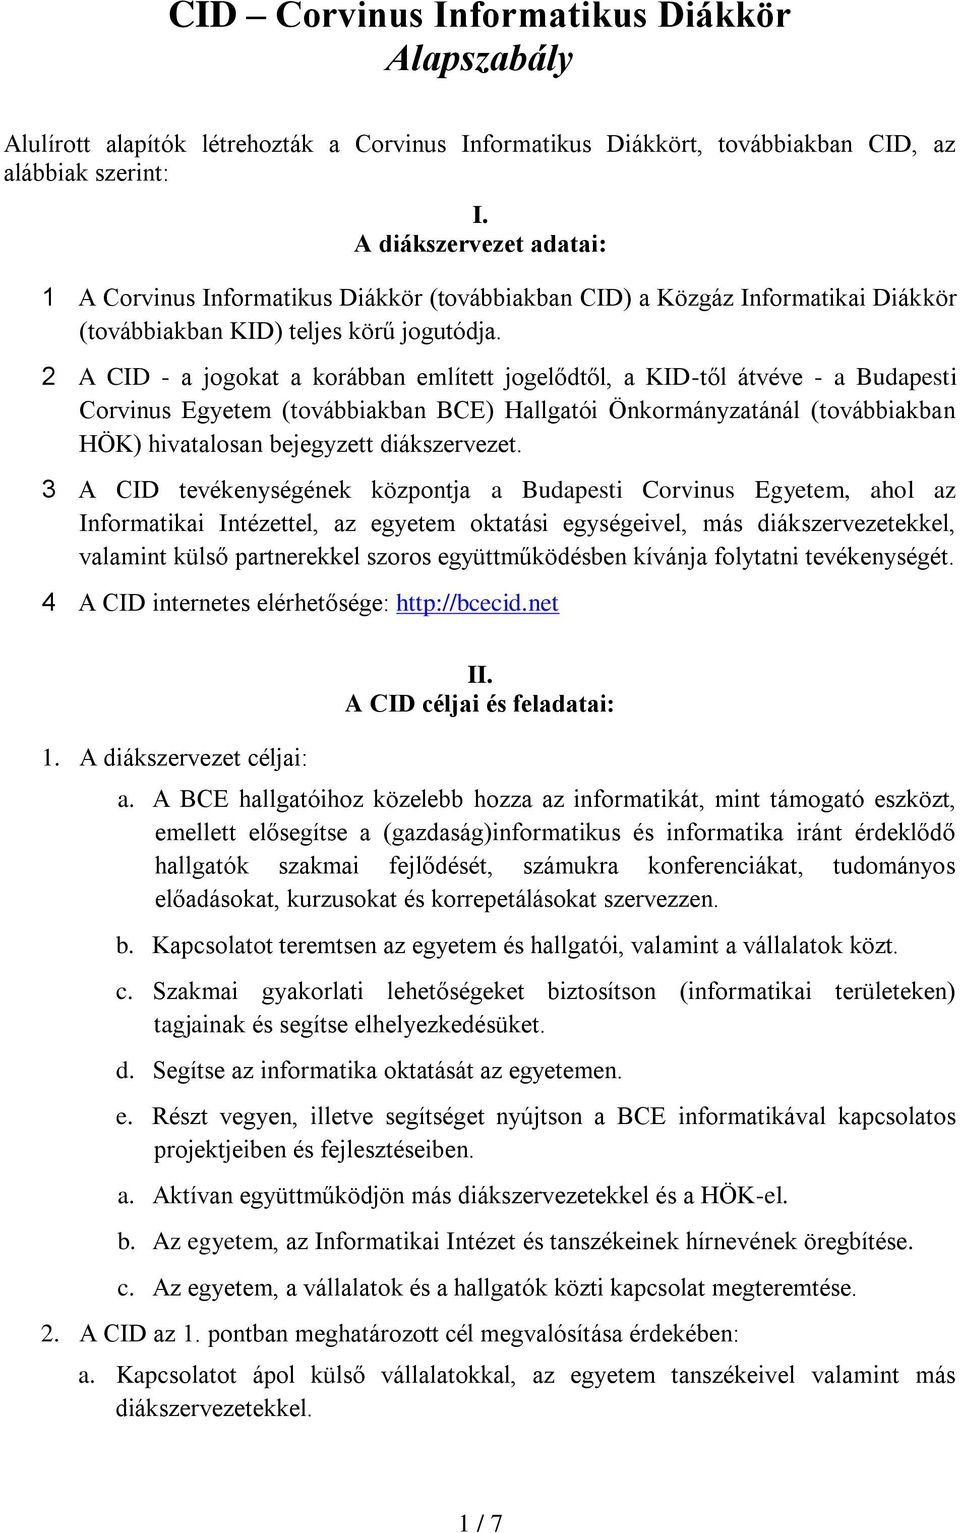 2 A CID - a jogokat a korábban említett jogelődtől, a KID-től átvéve - a Budapesti Corvinus Egyetem (továbbiakban BCE) Hallgatói Önkormányzatánál (továbbiakban HÖK) hivatalosan bejegyzett